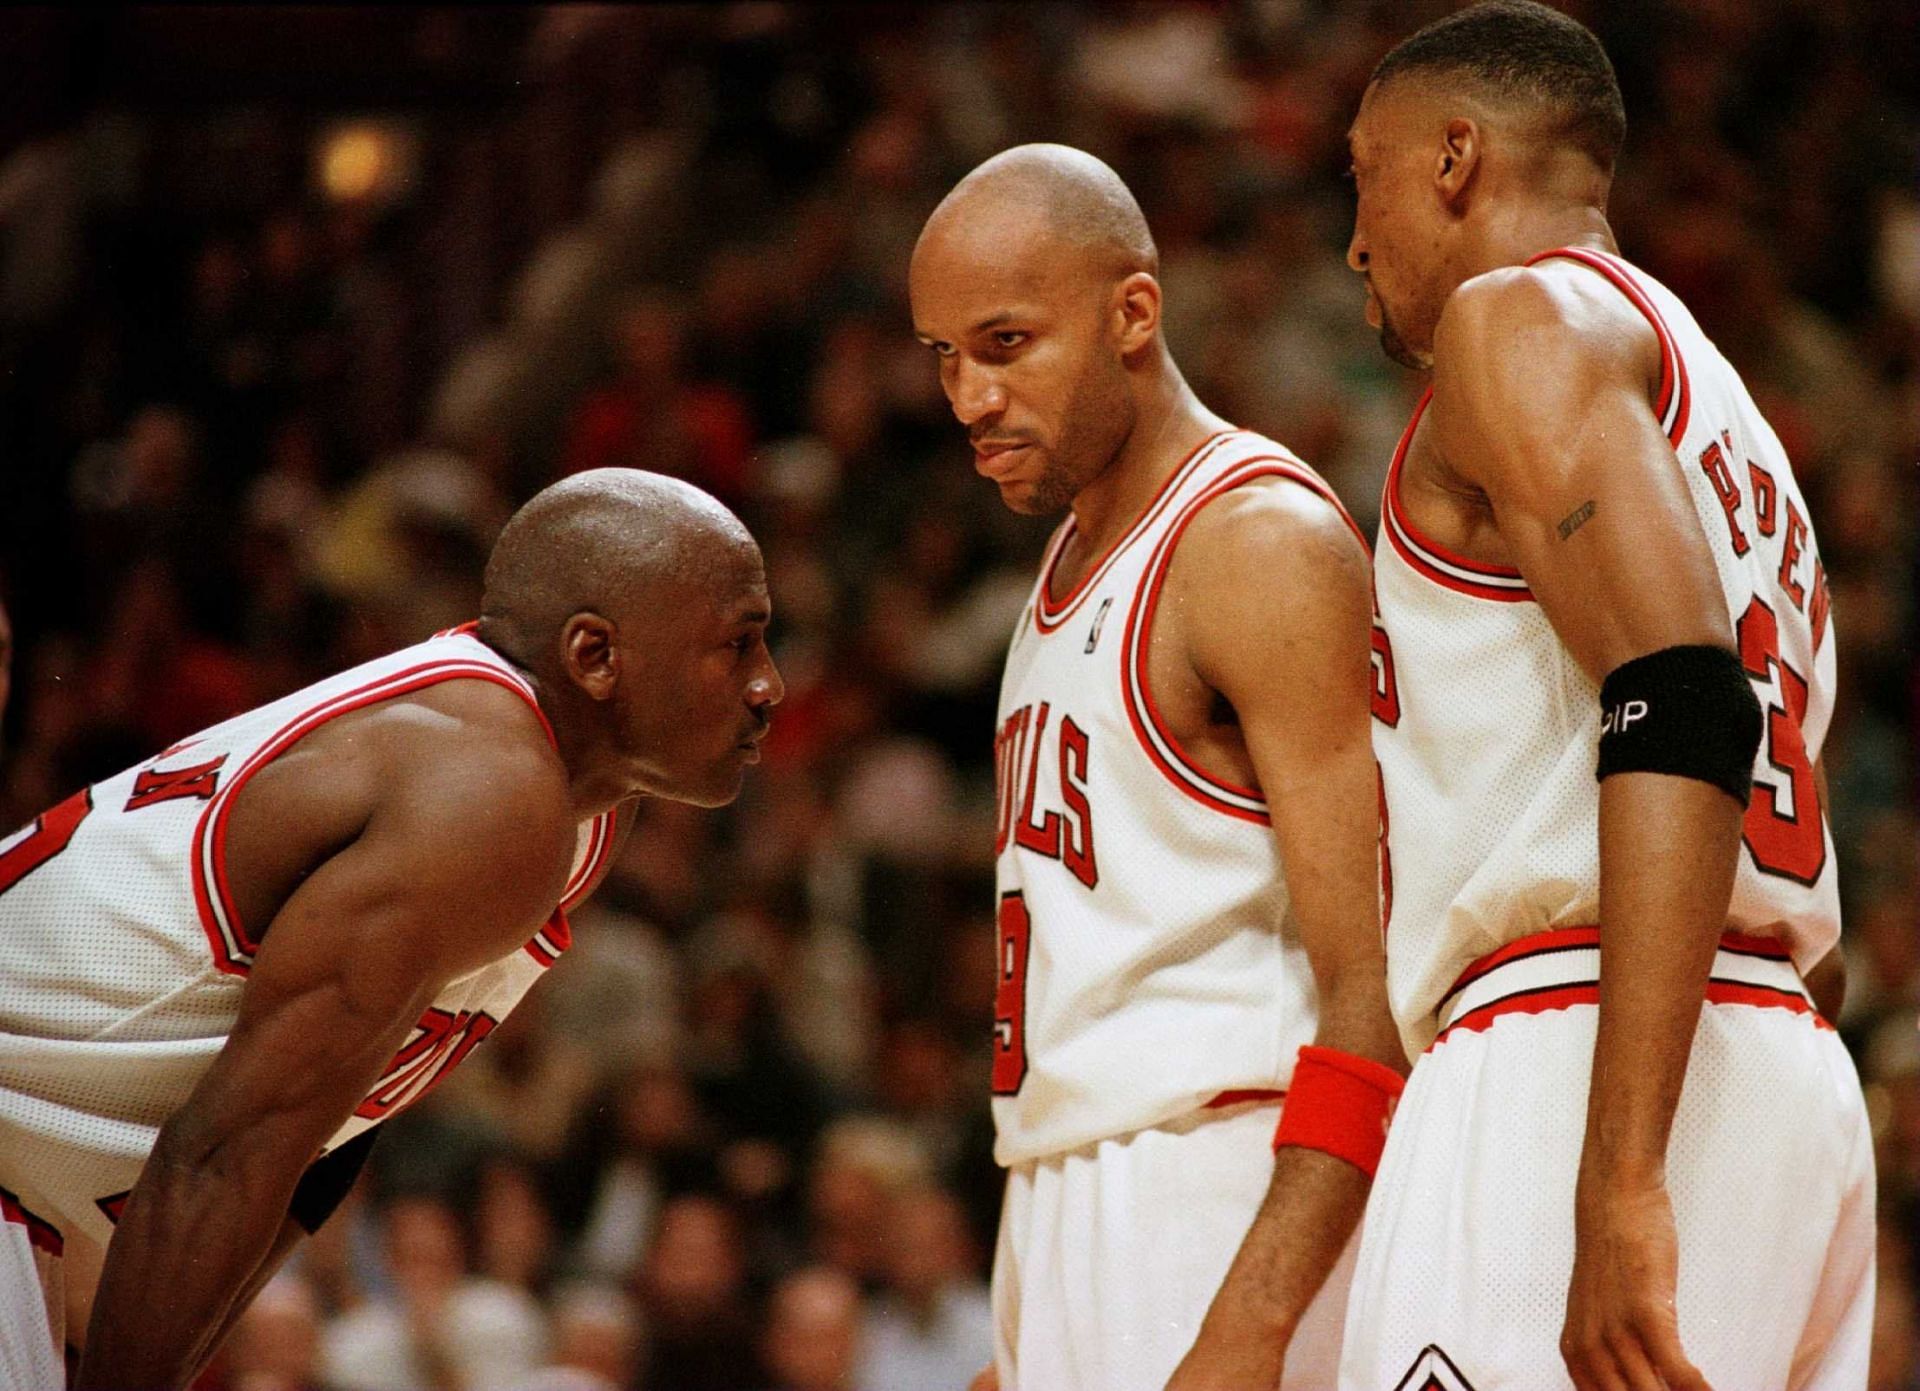 Who is Better? 95-96 Chicago Bulls vs. 16-17 Golden State Warriors